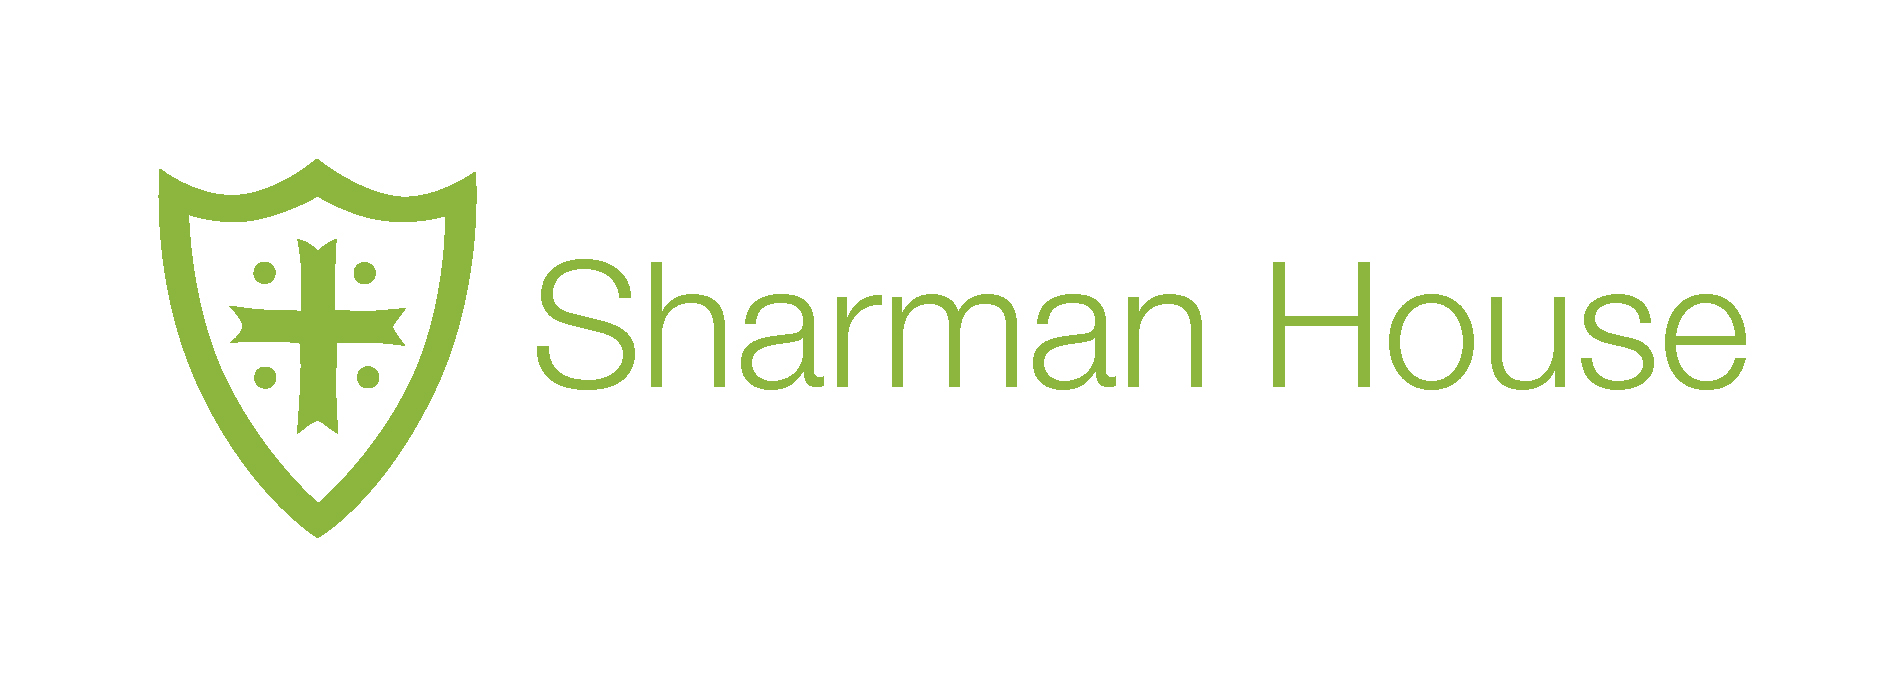 Sharman House Logo 